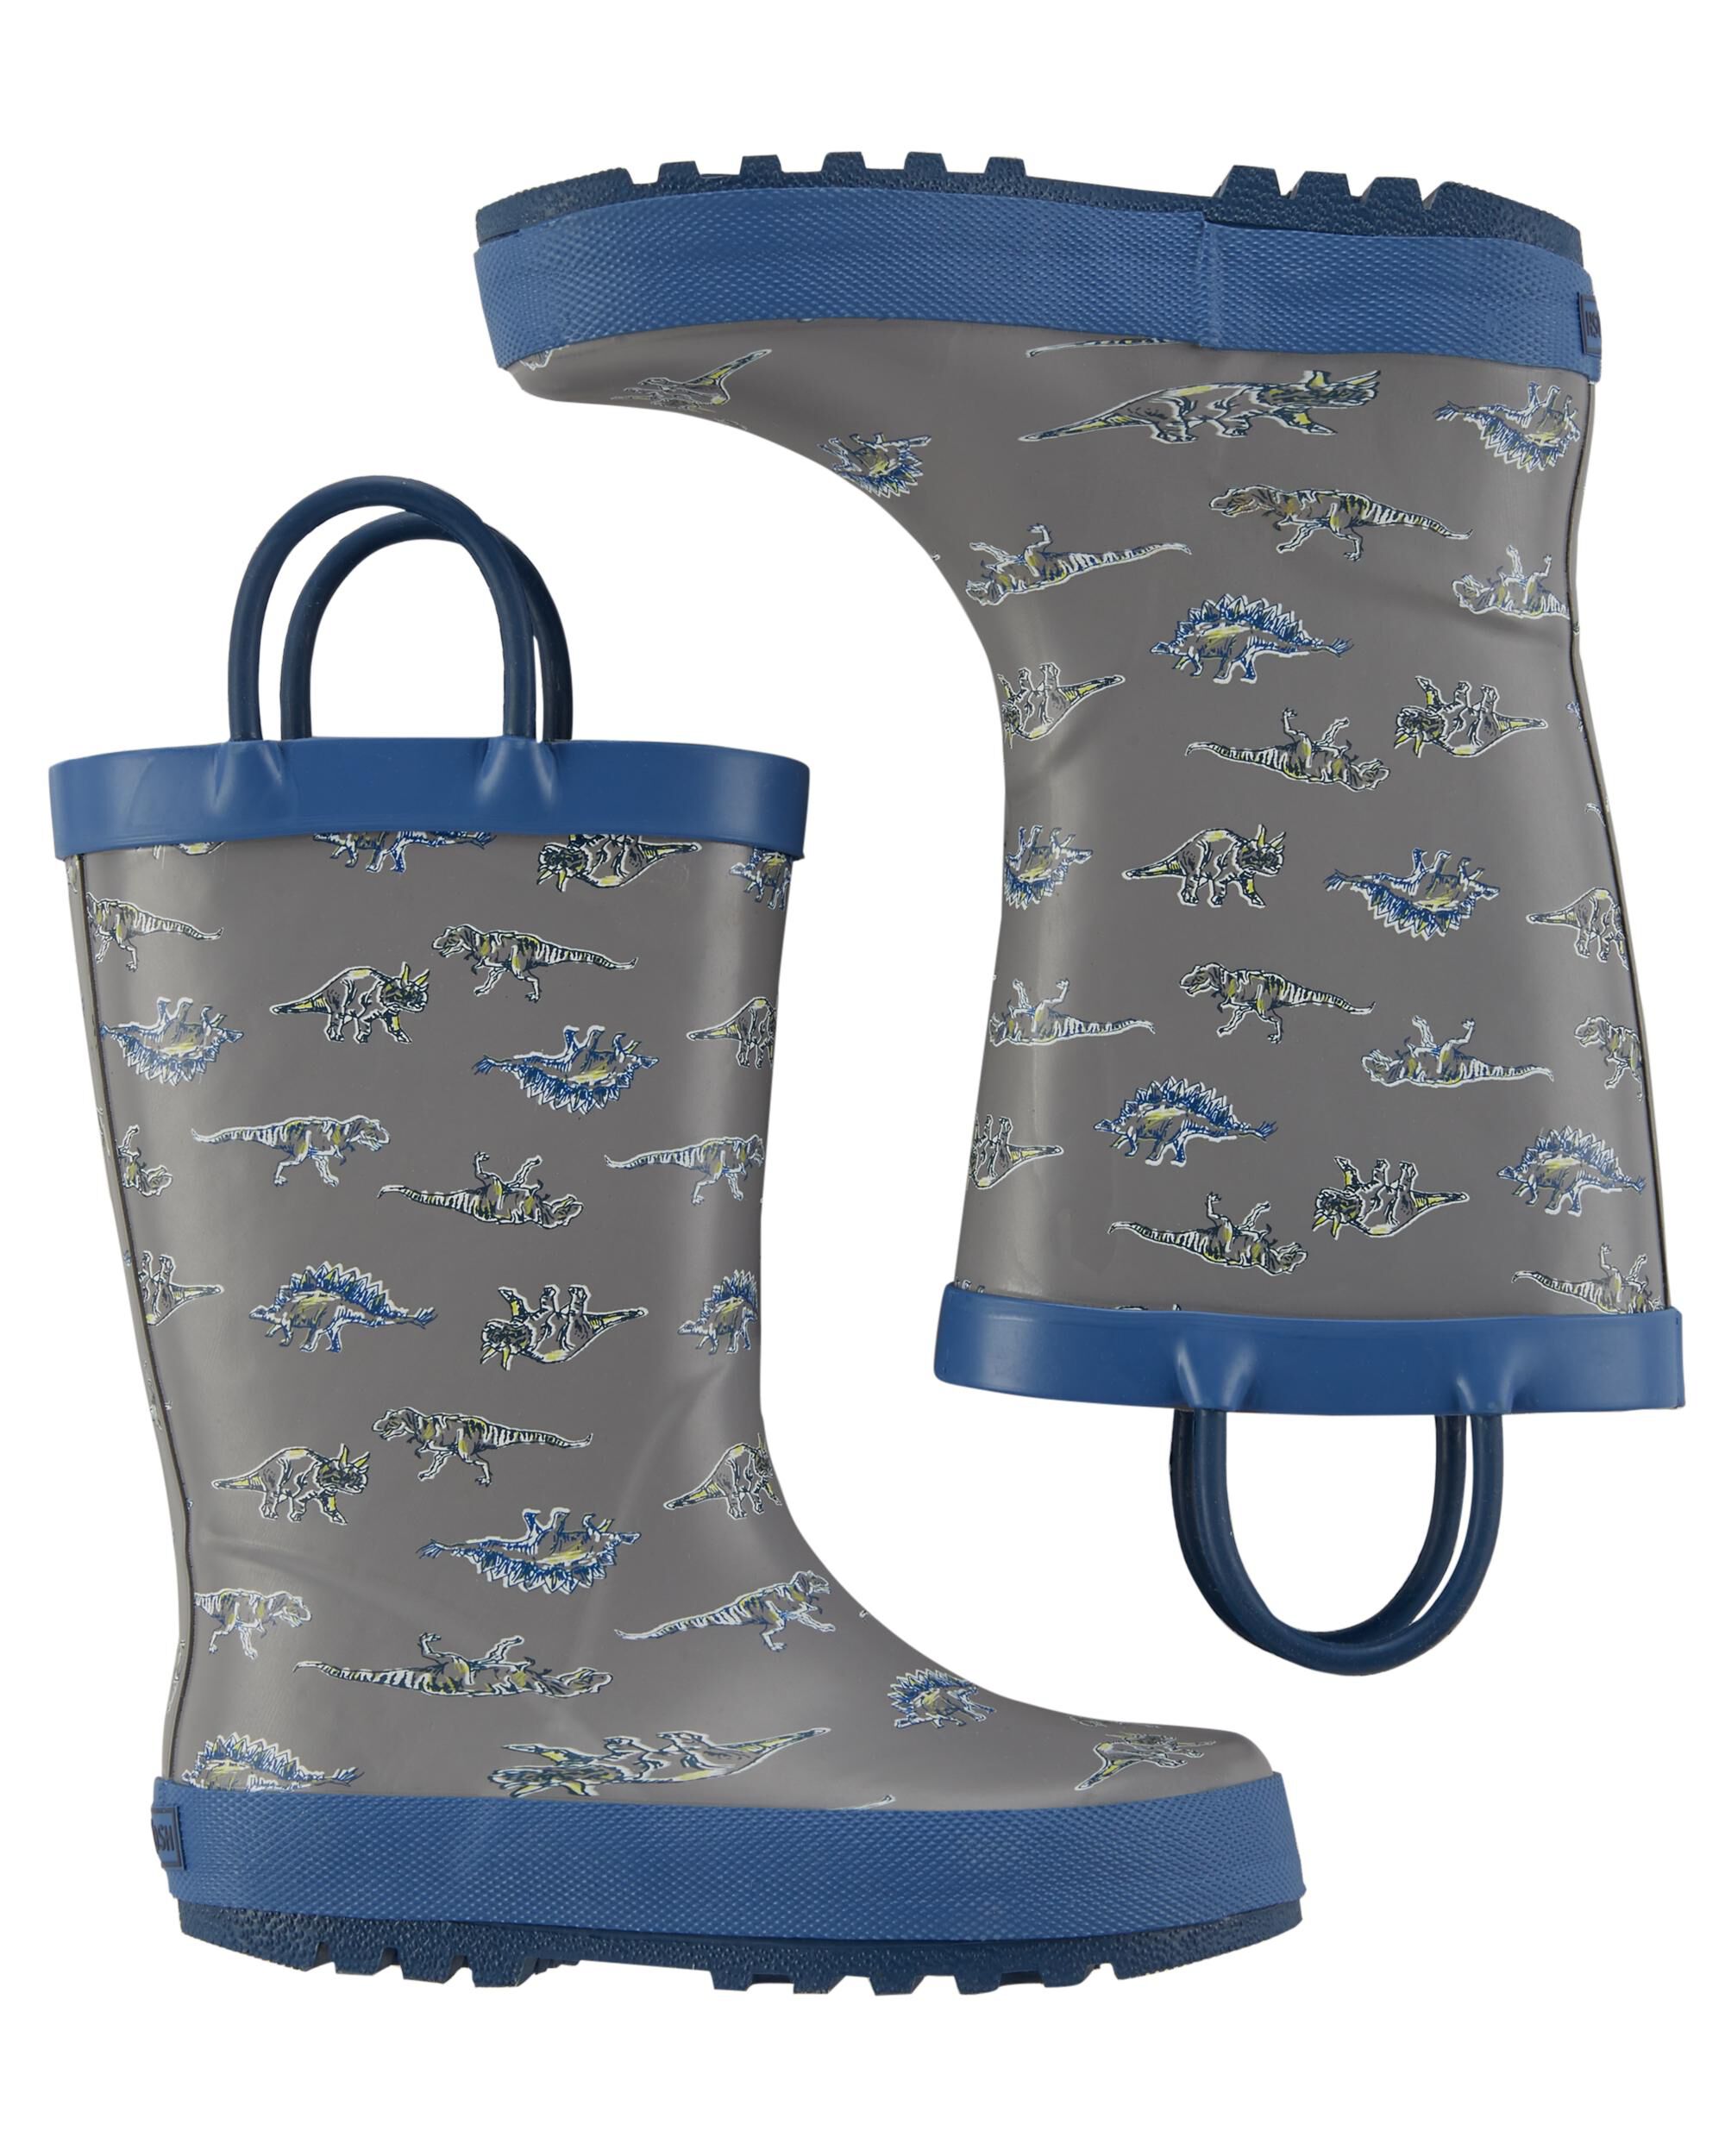 OshKosh Rain Boots | oshkosh.com